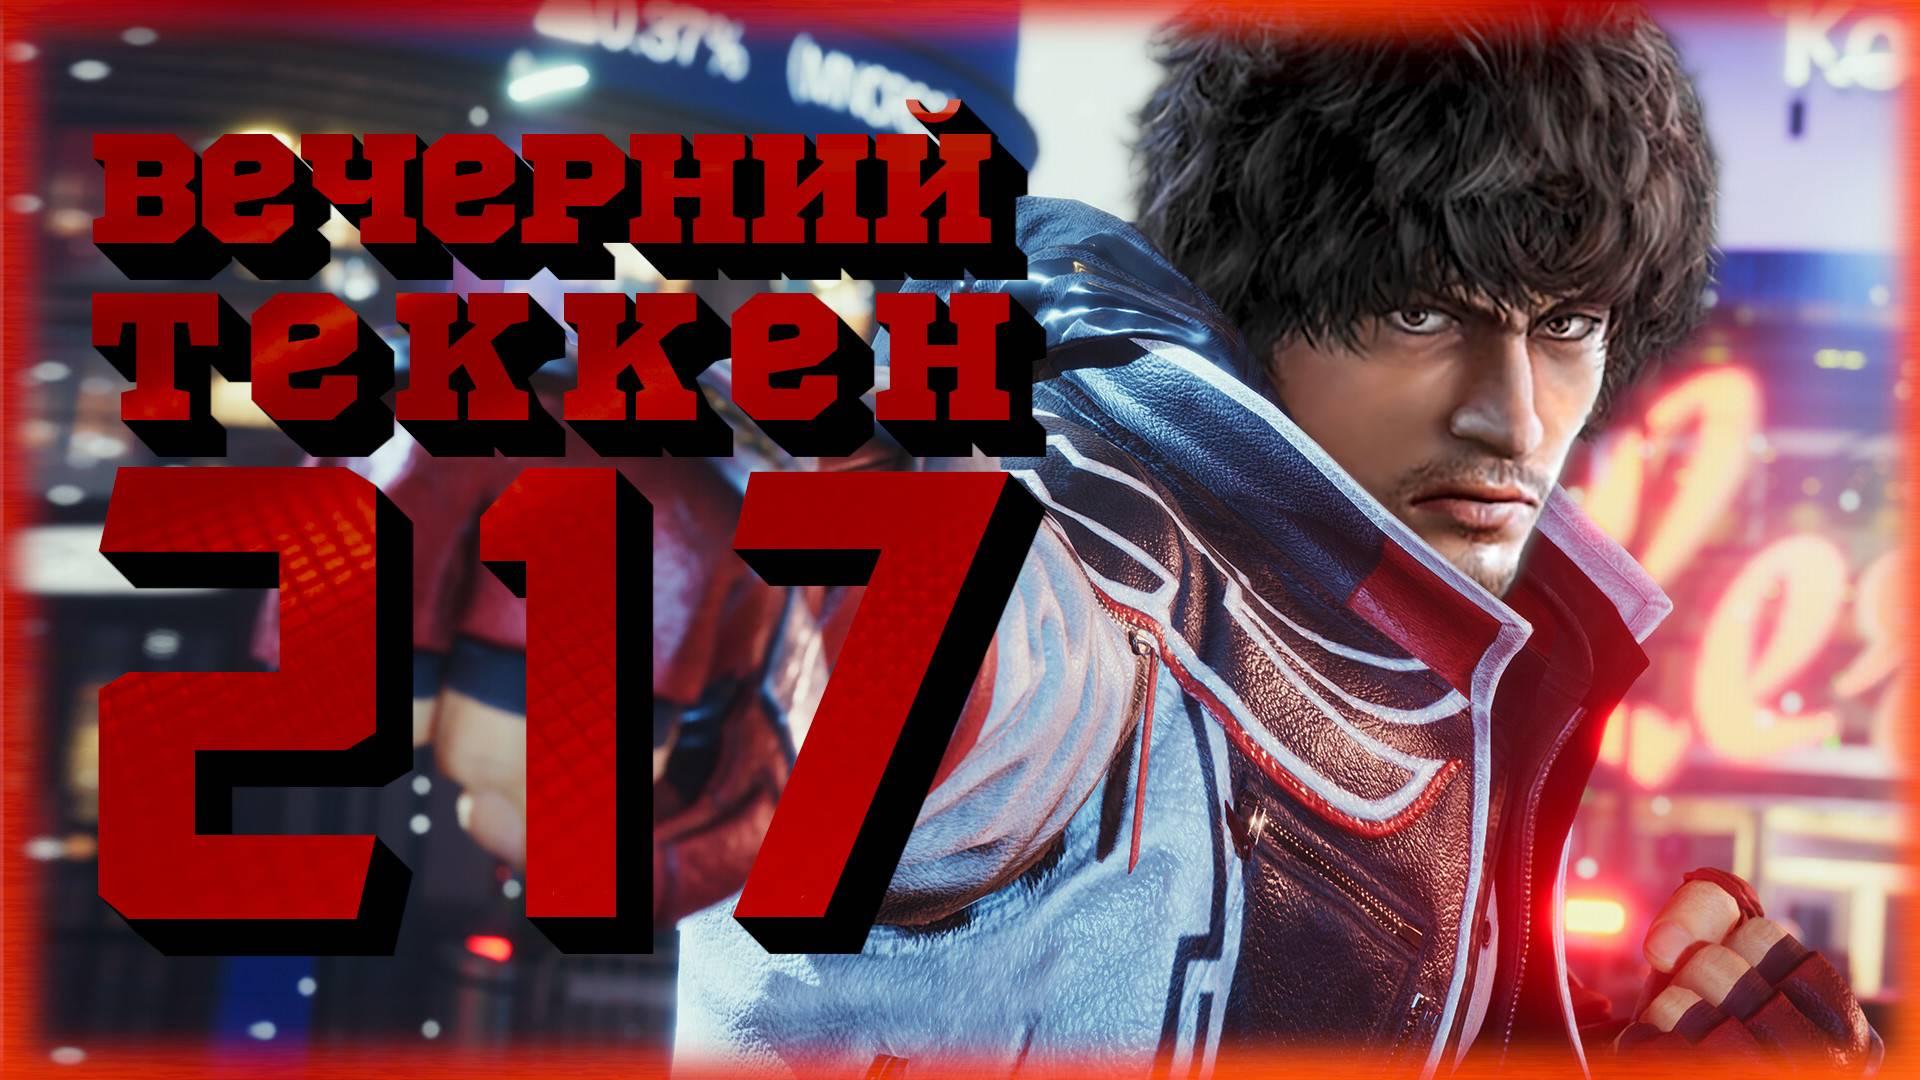 Вечерний Tekken! - Последний патч 1го сезона